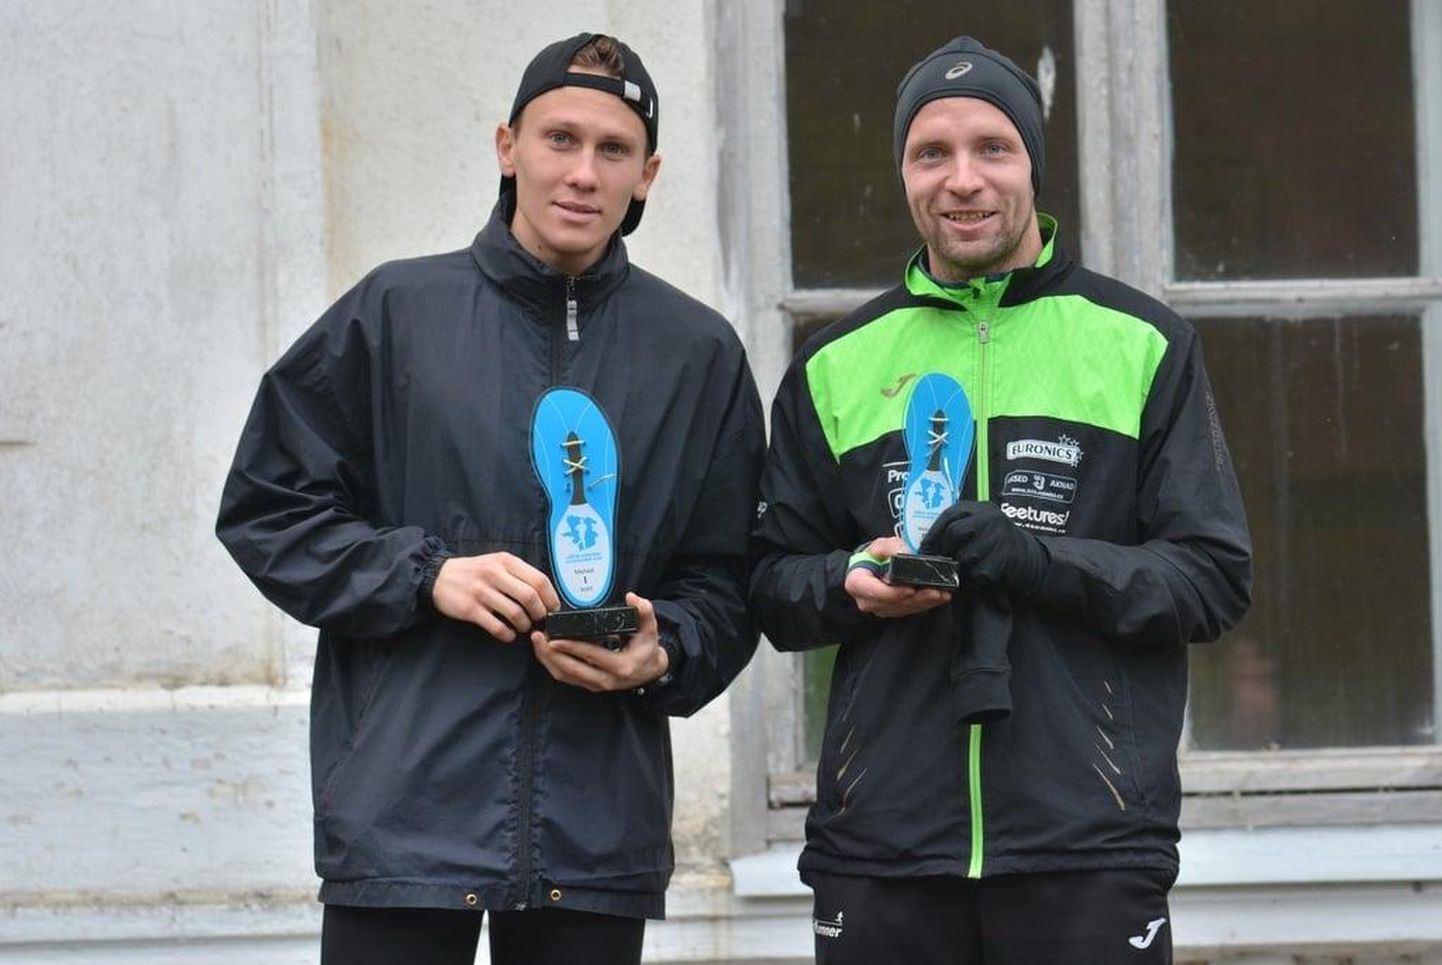 Lääne-Viru välejalad Taavi Kilki (vasakul) ja Cris Poll hõivasid kodumaakonna mitmeetapilise võistlussarja kokkuvõttes sellel aastal vastavalt esimese ja kolmanda koha.